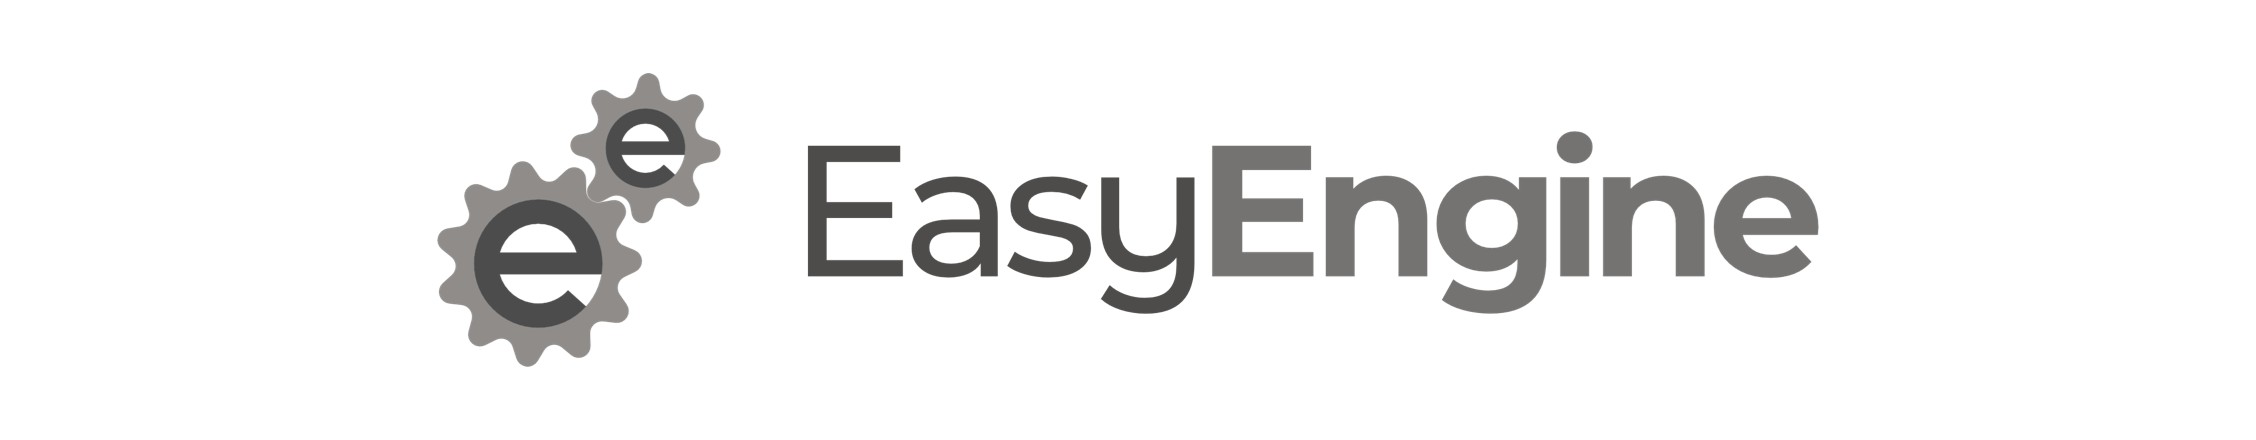 easyengine logo